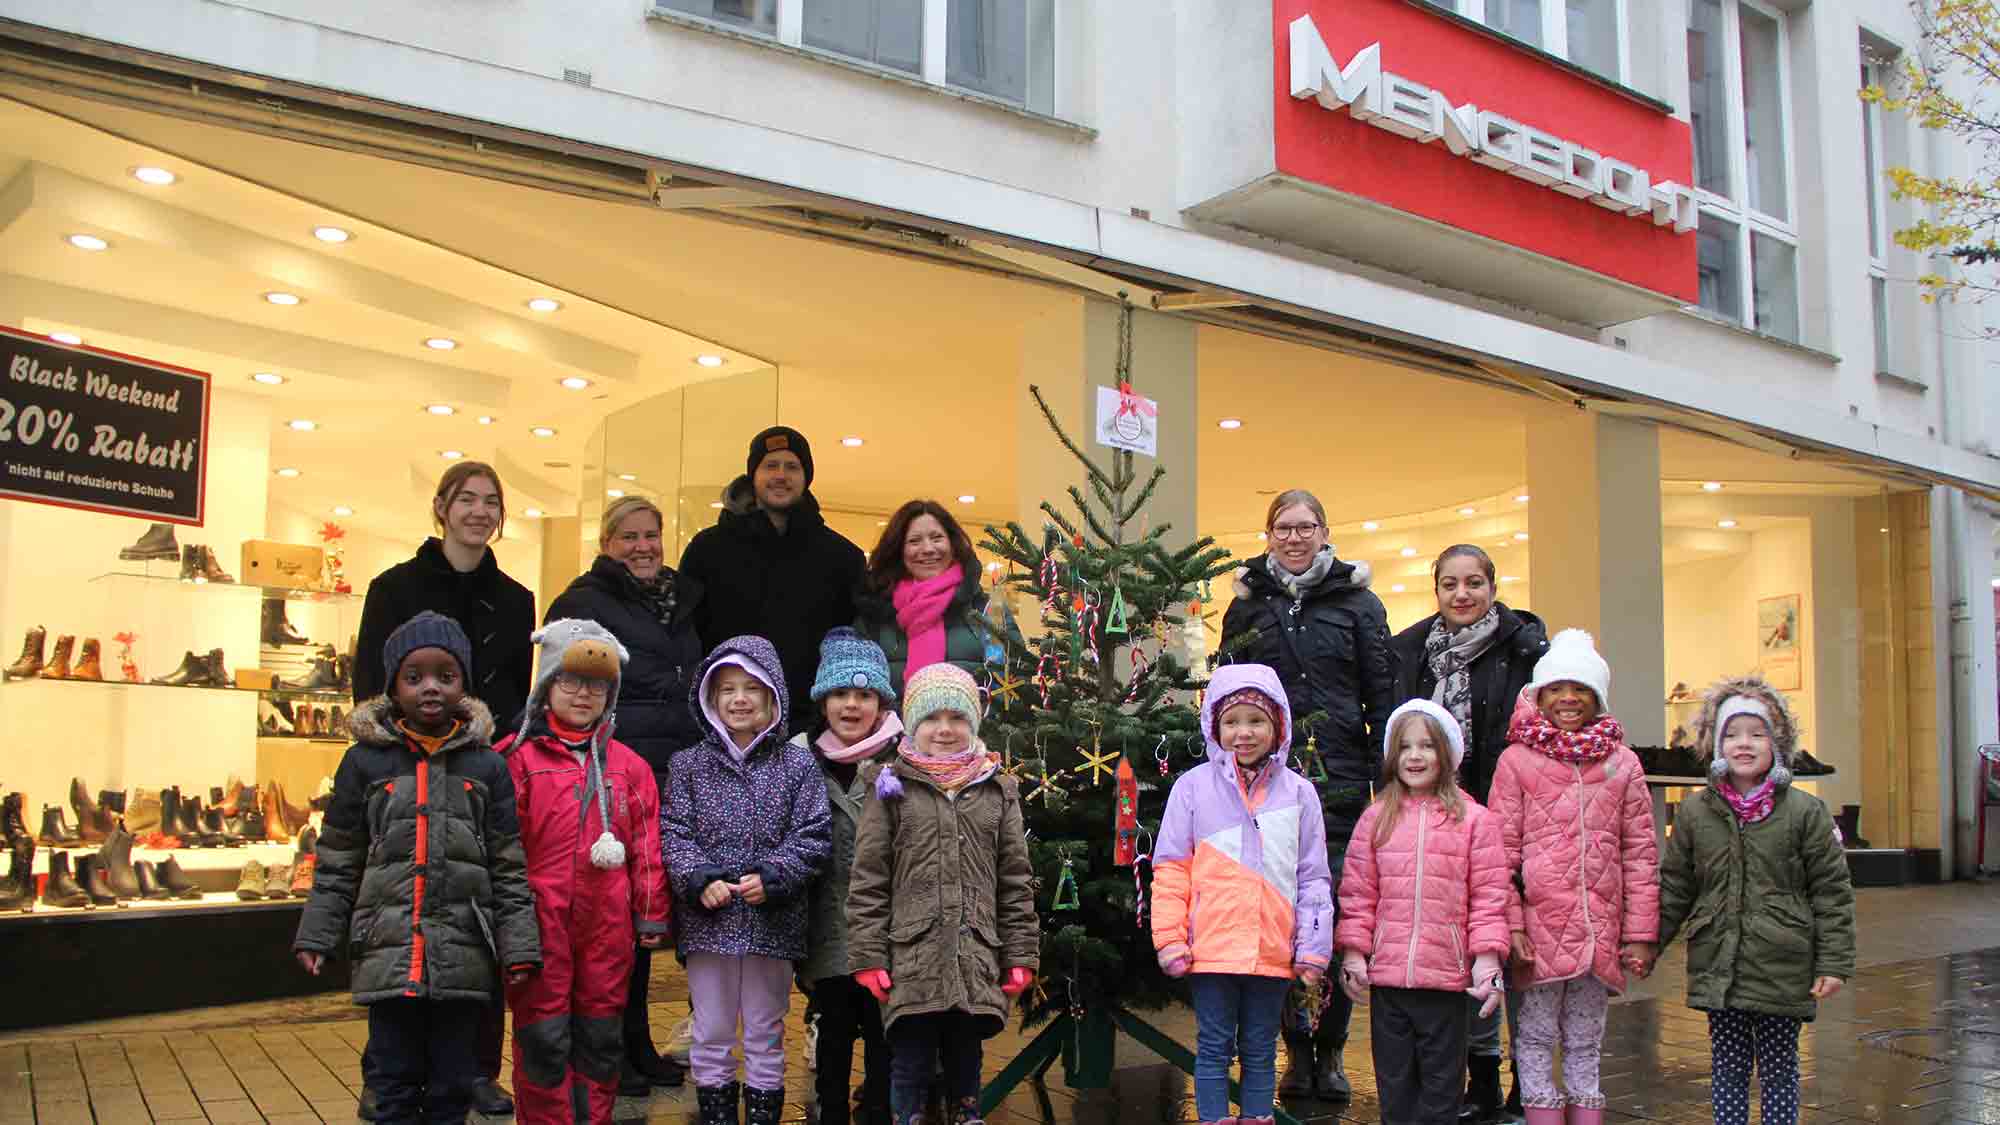 Kinder schmücken Herfords Weihnachtsbäume: 40 Bäume in der Innenstadt festlich verziert